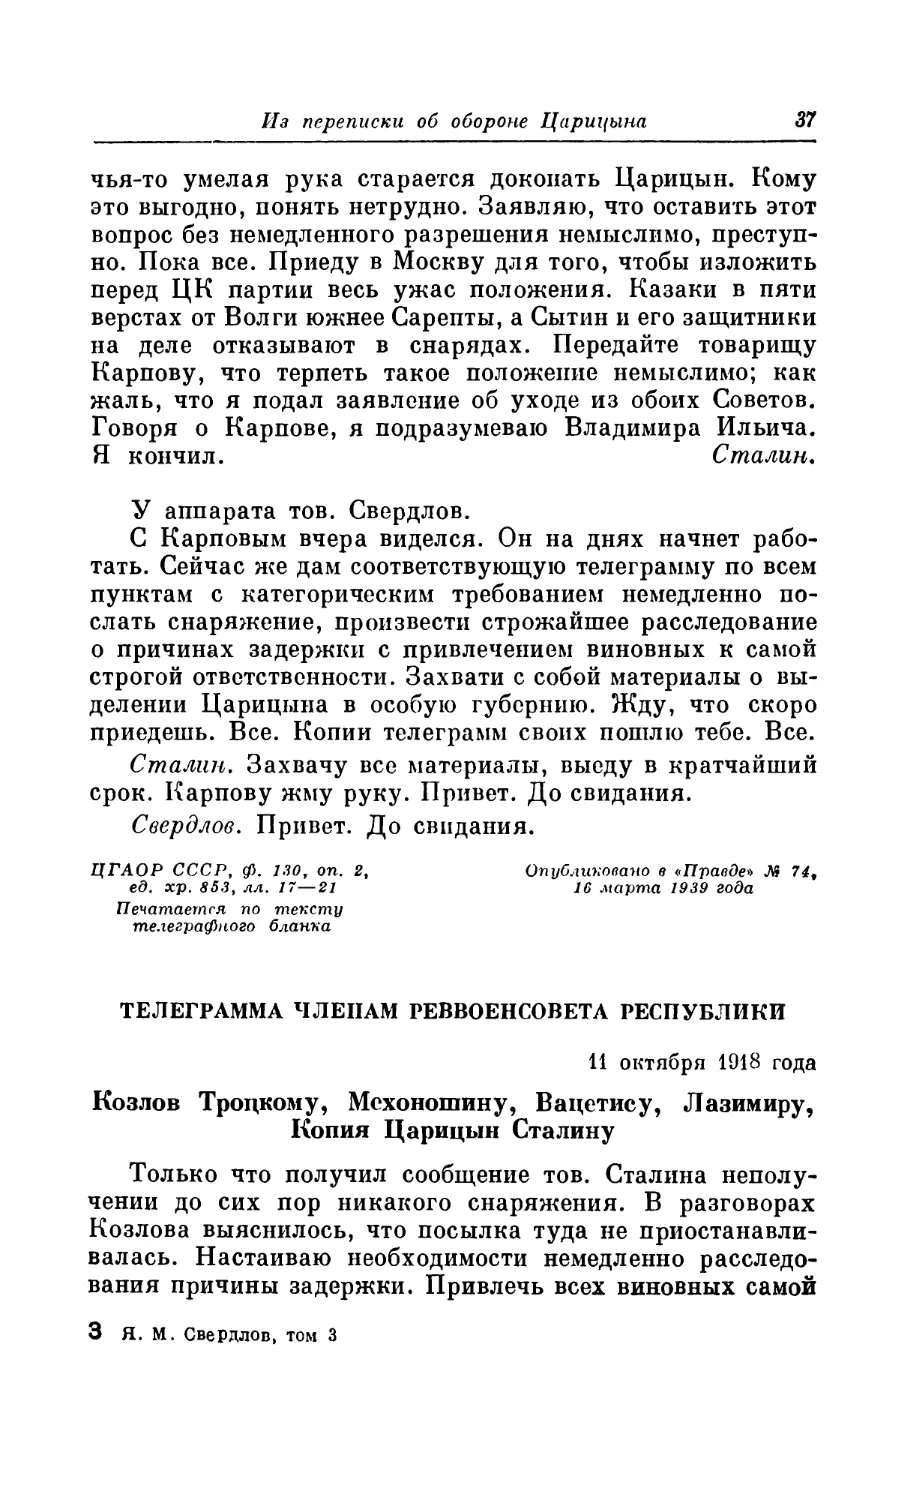 ТЕЛЕГРАММА ЧЛЕНАМ РЕВВОЕНСОВЕТА РЕСПУБЛИКИ. 11 октября 1918 года